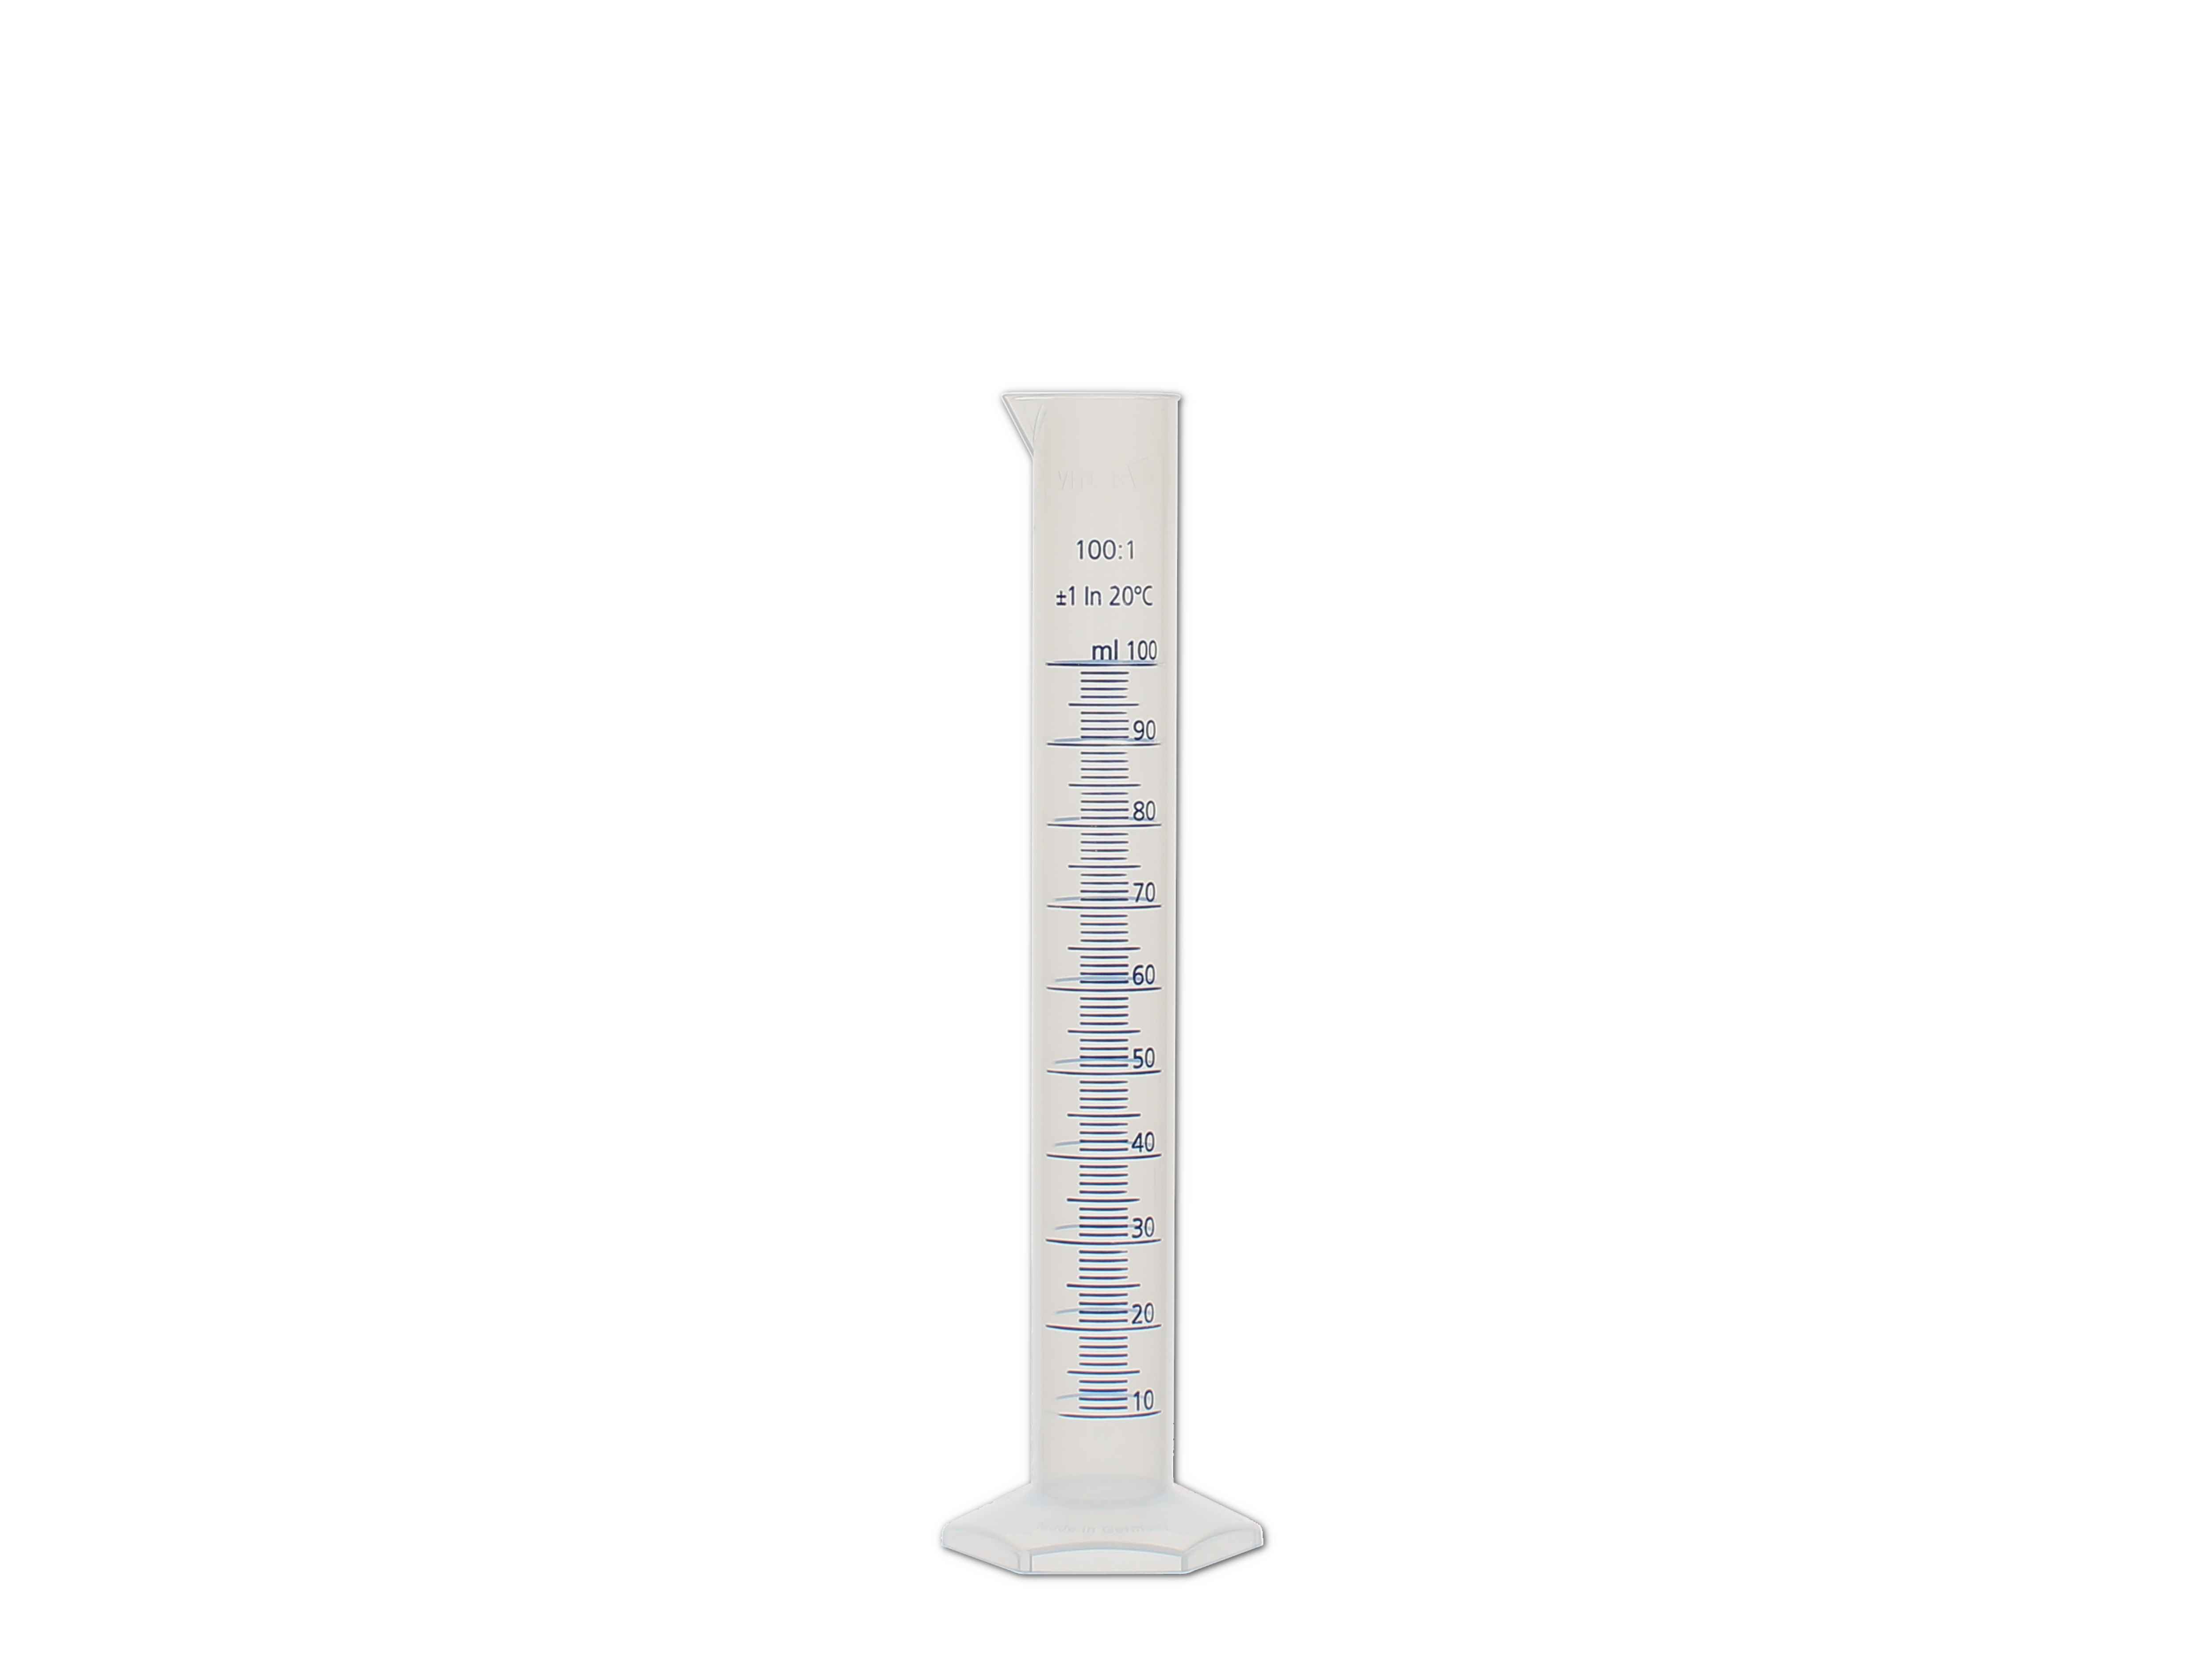 BESTONZON 100 ml Messzylinder mit achteckiger Basis für den Heimgebrauch im Labor 